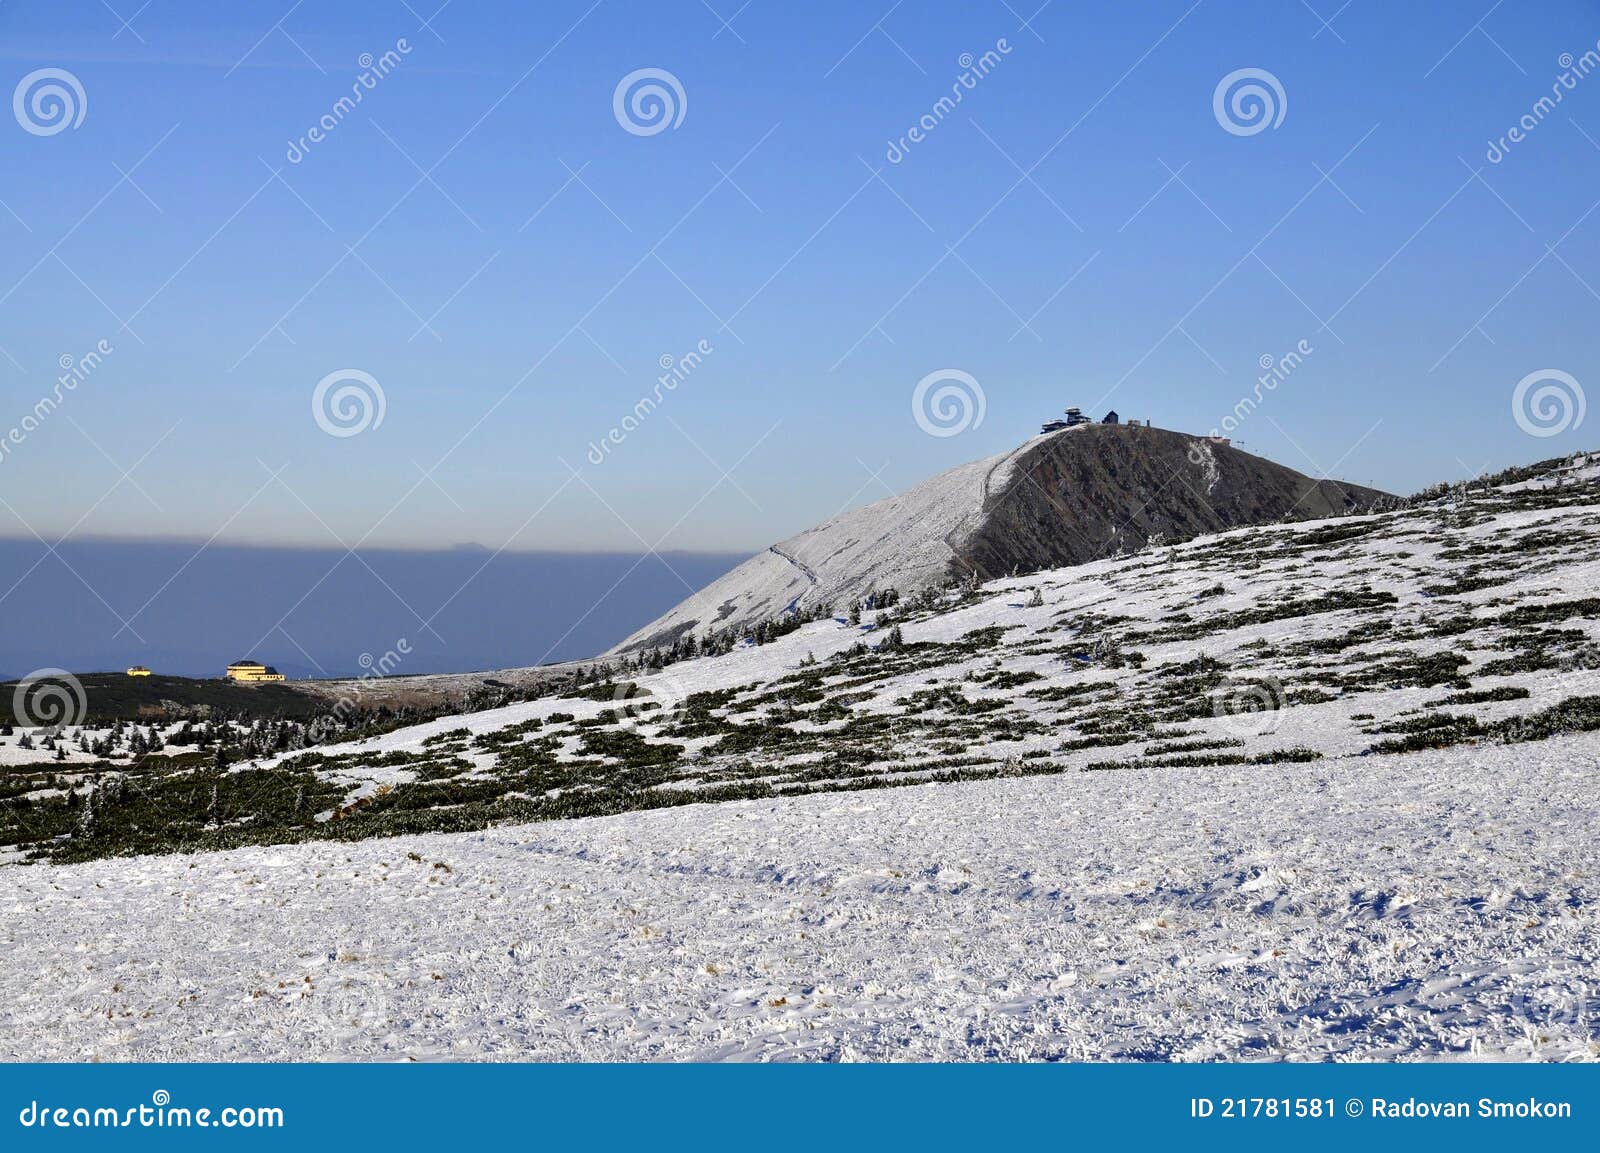 peak snezka 1602 m n.m.